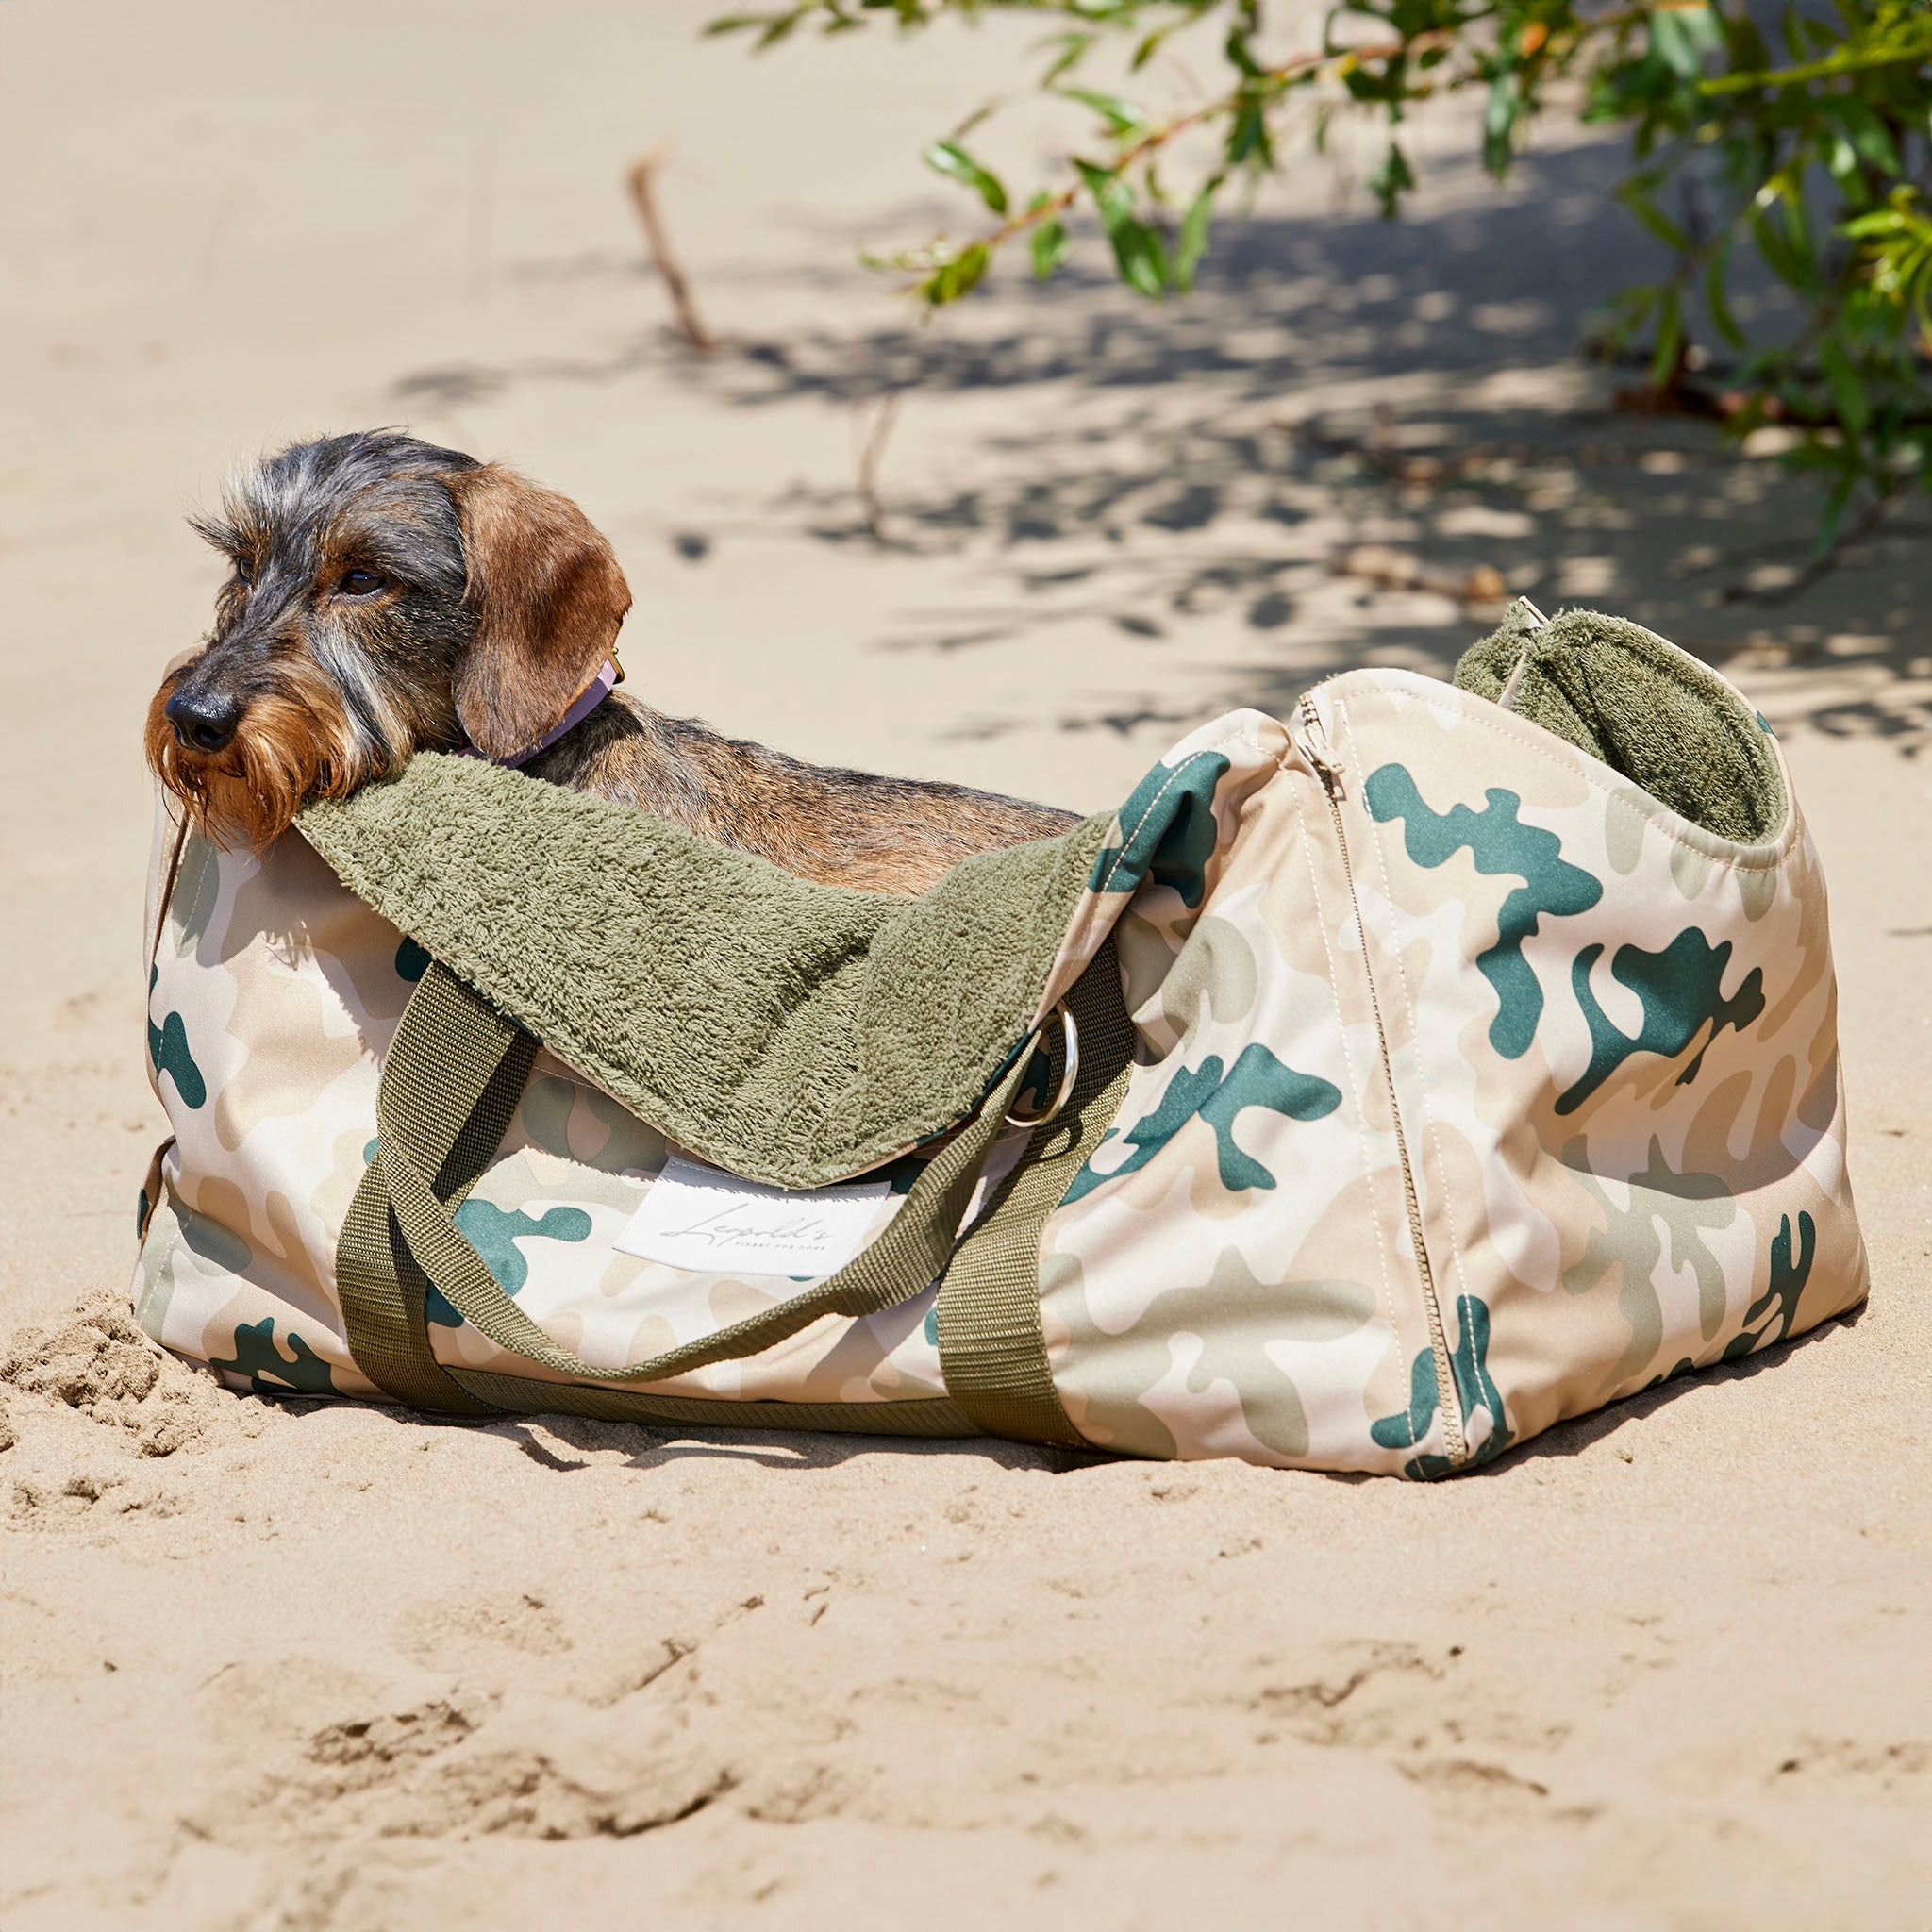 4 in 1 Travel Bag Allrounder – Hundetasche und Decke in einem [camouflage hell]